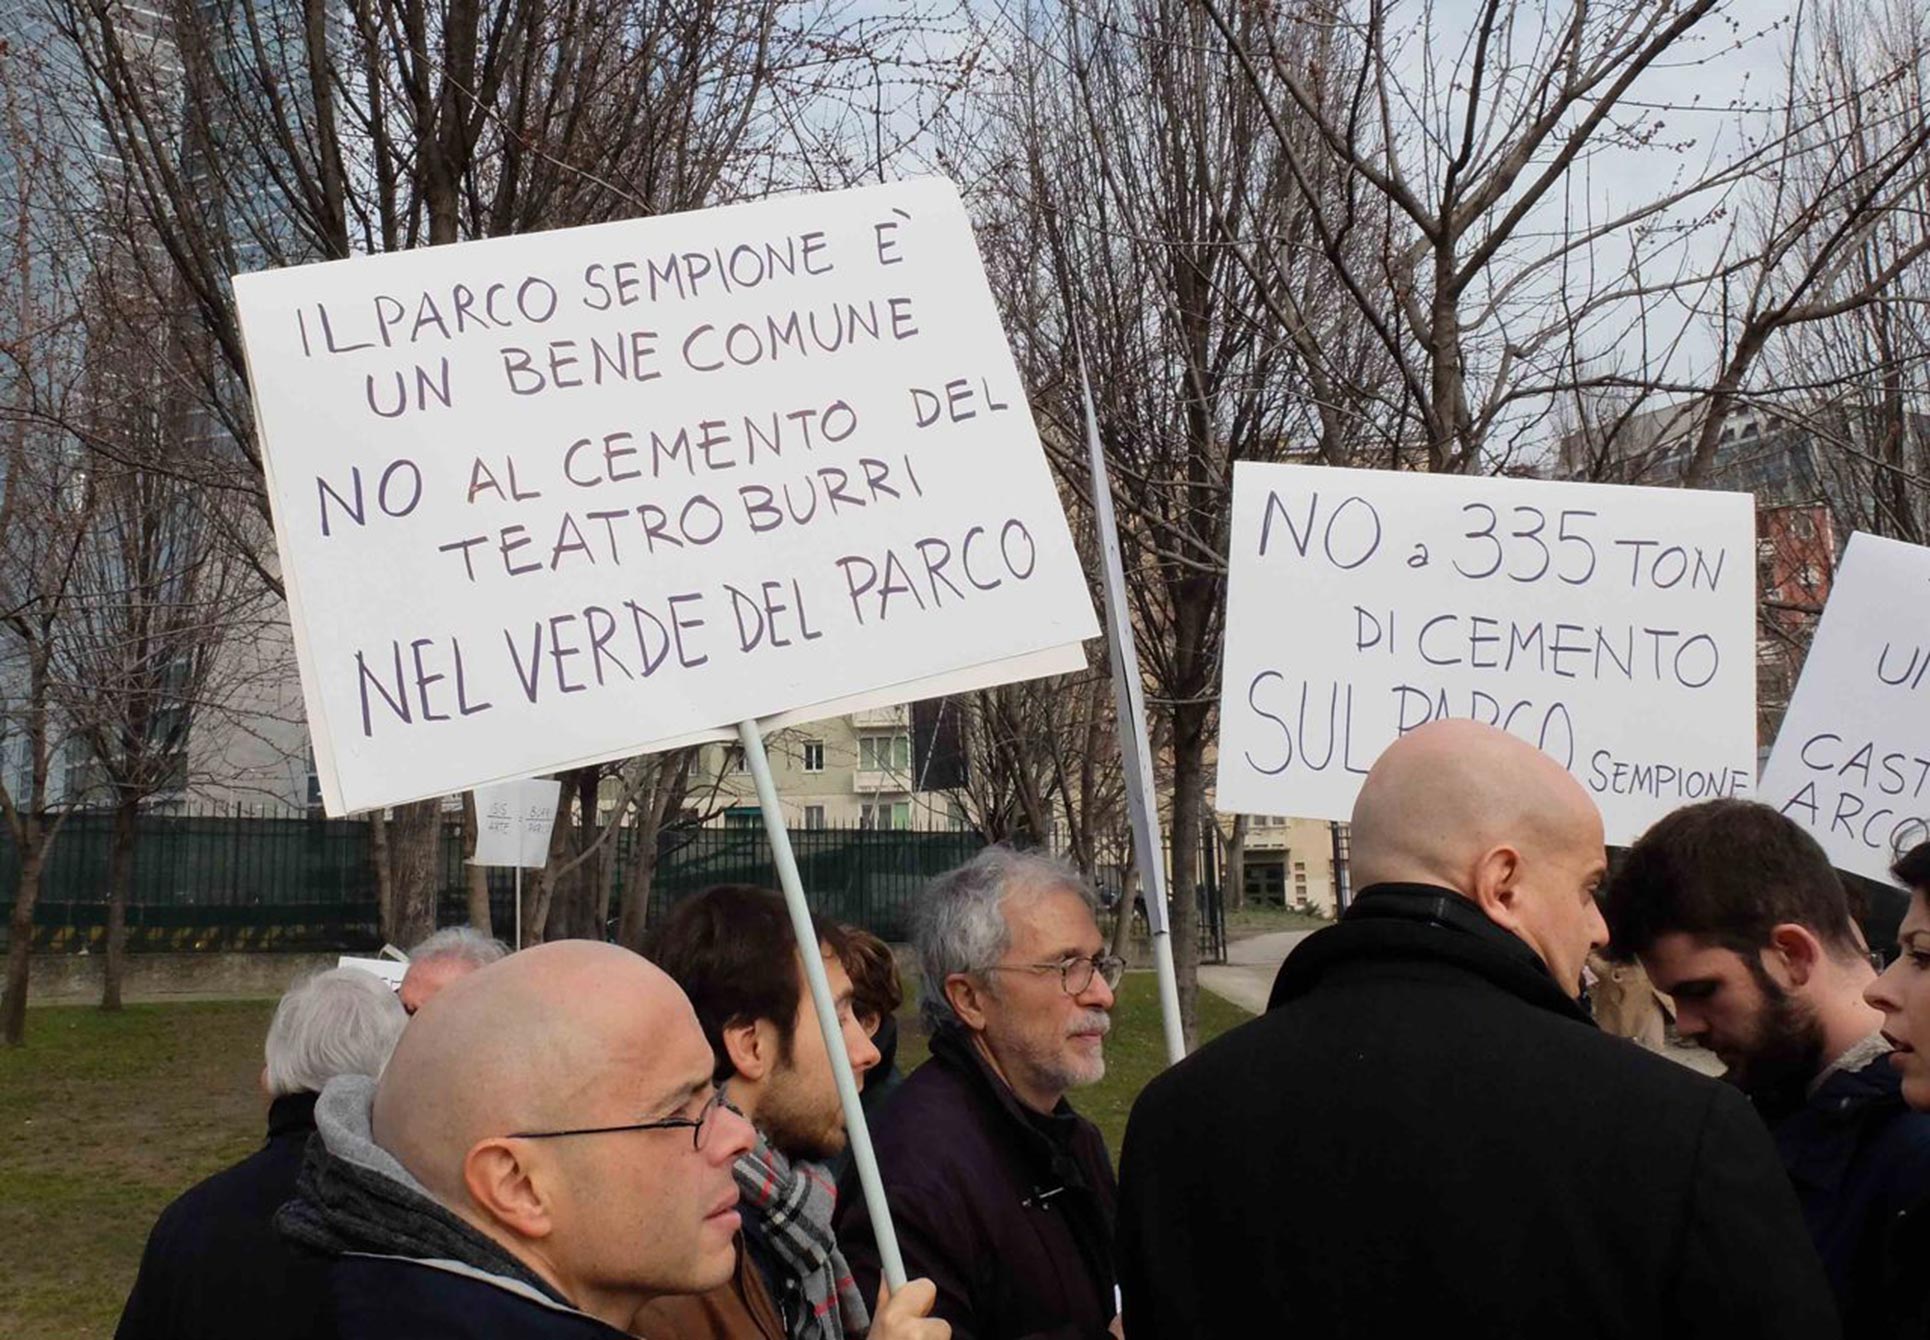 Protest against Alberto Burri's Teatro Continuo, 2015, Milan